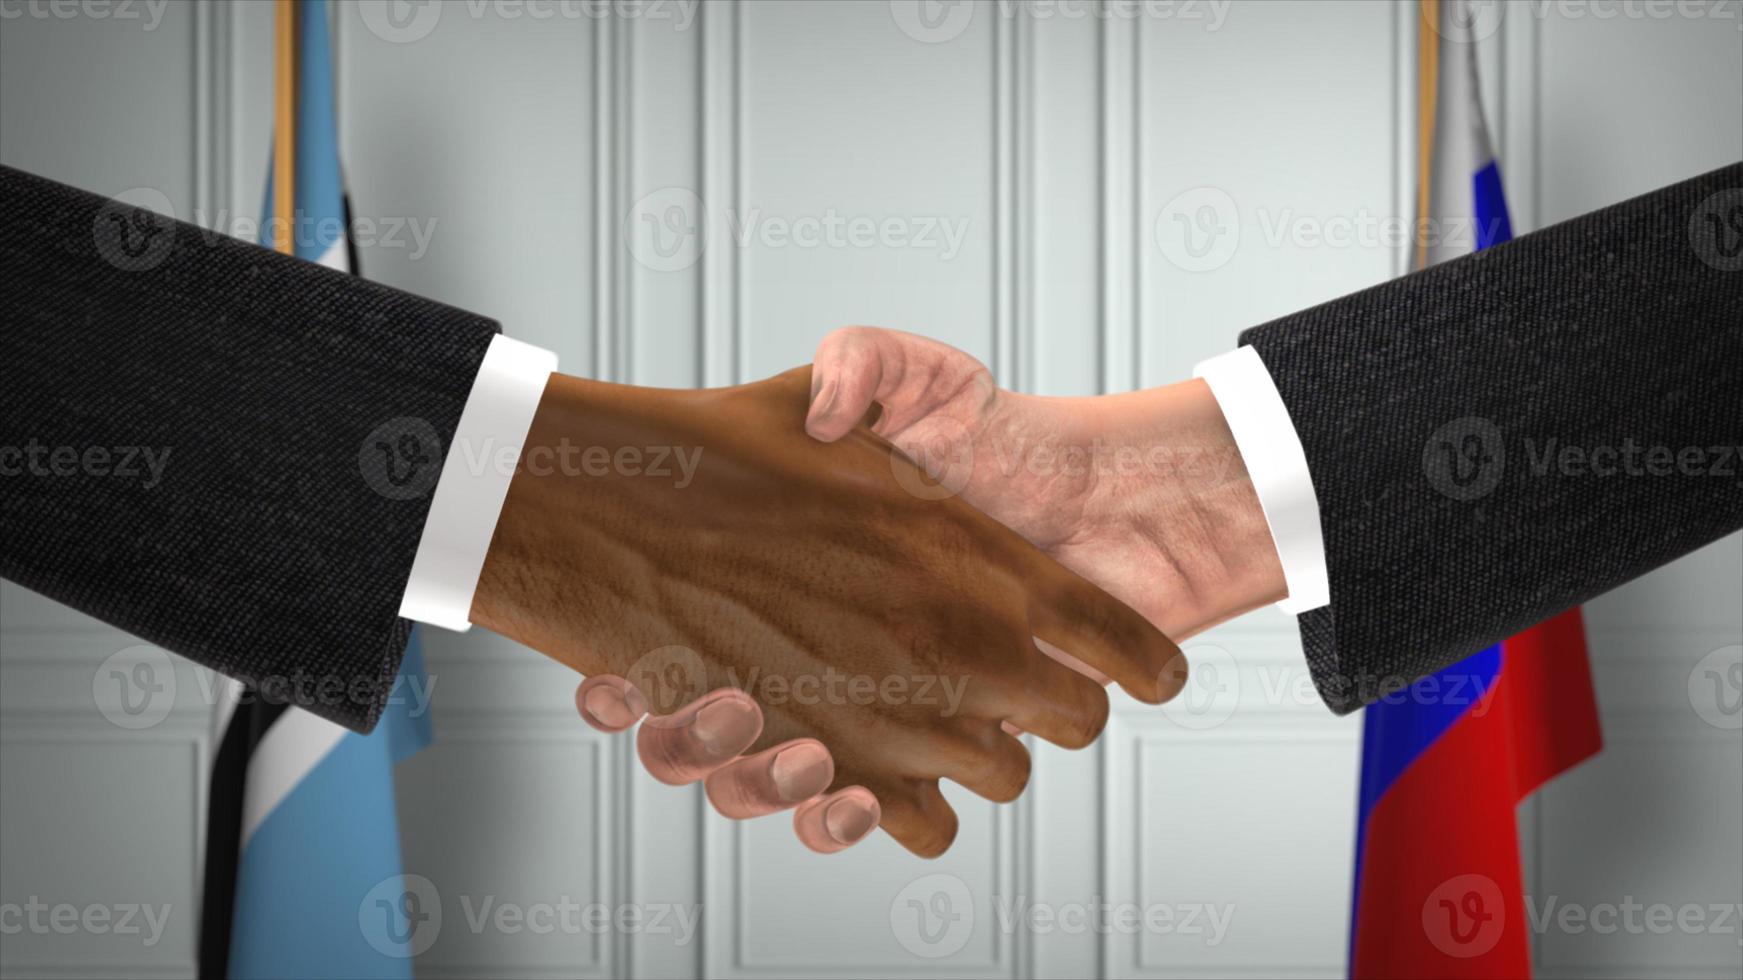 Botswana e Russia affare stretta di mano, politica 3d illustrazione. ufficiale incontro o cooperazione, attività commerciale incontrare. uomini d'affari o politici shake mani foto